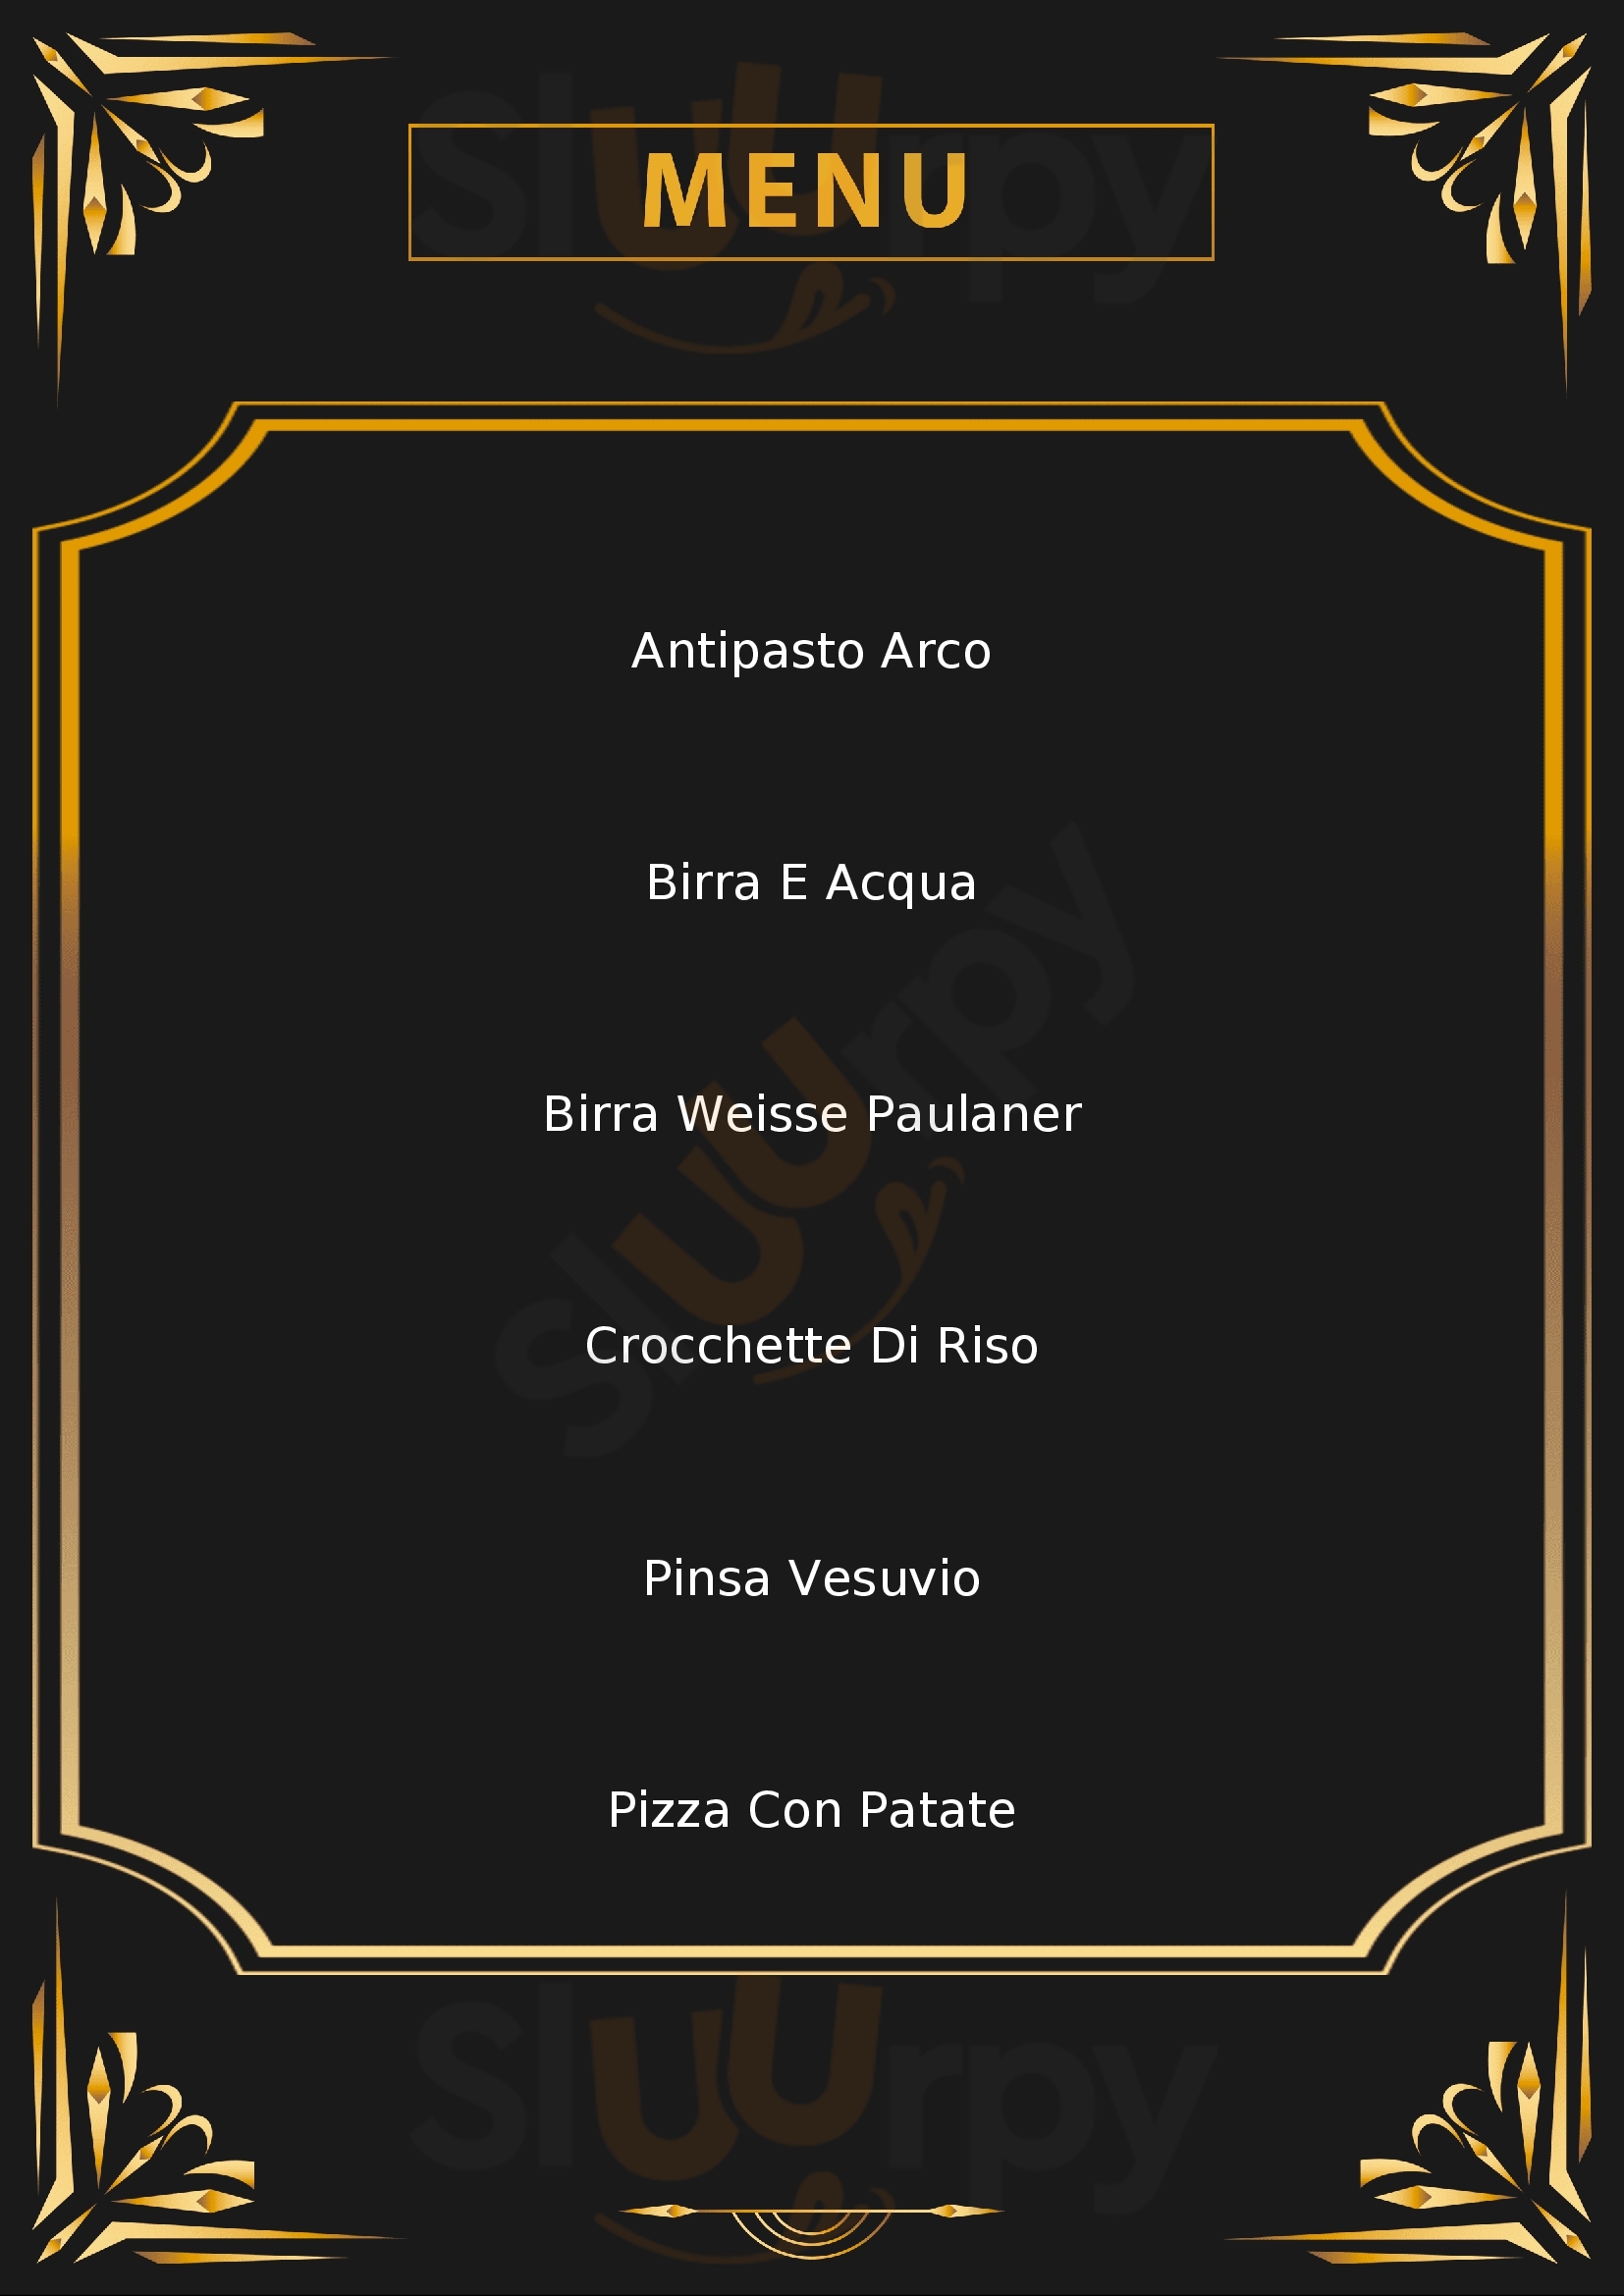 L'Arco - Pizzeria Osteria Rende menù 1 pagina